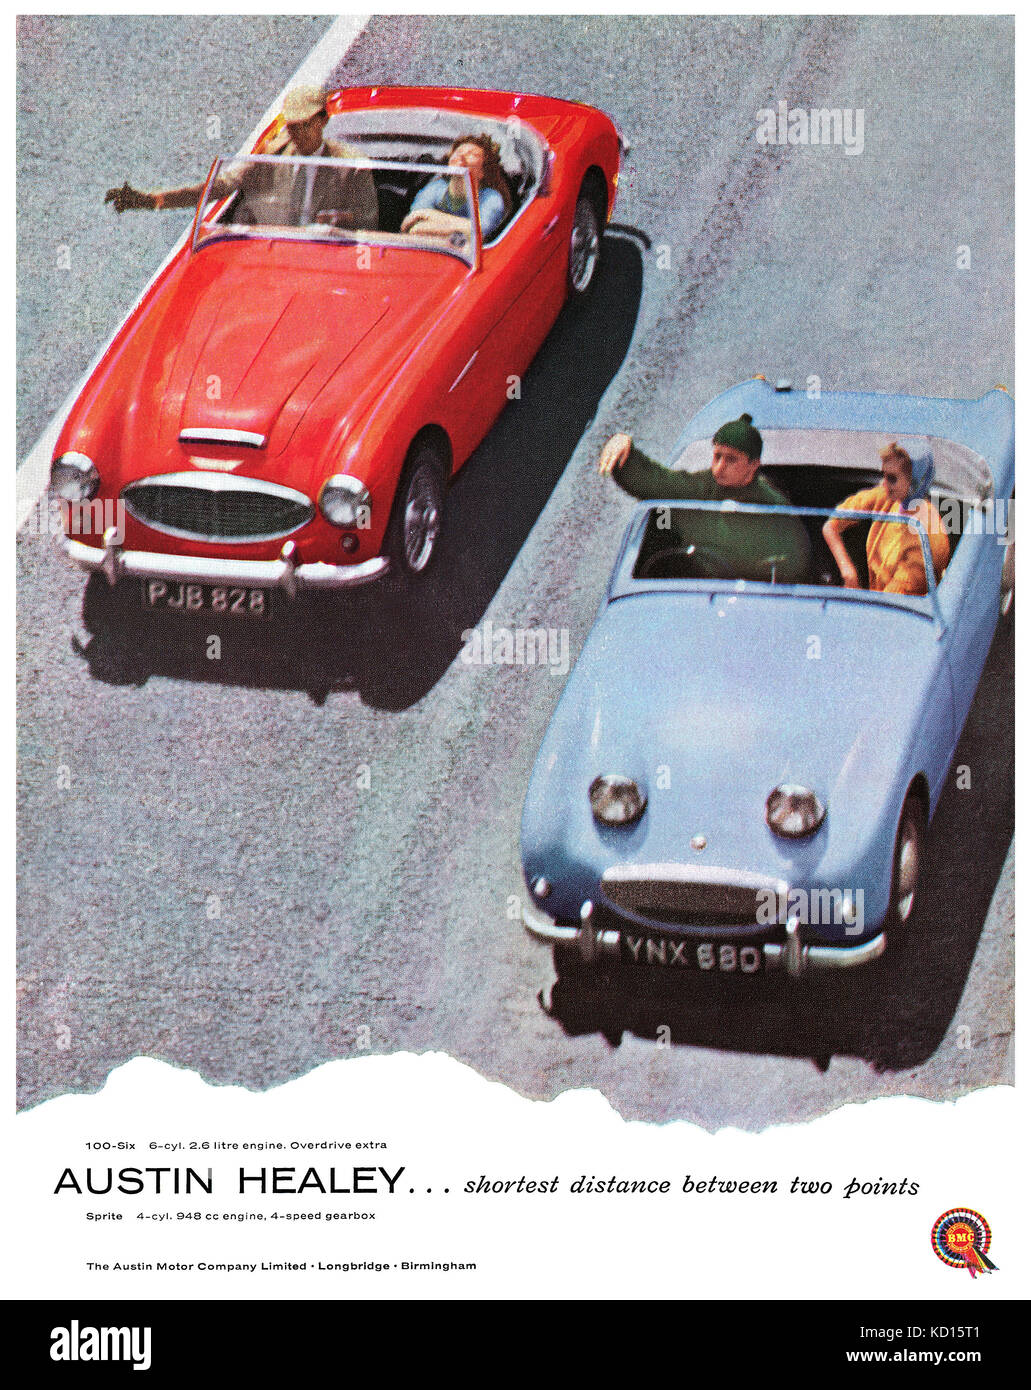 1958 British pubblicità per la Austin Healey 100-6 e Austin Healey Sprite vetture sportive. Foto Stock